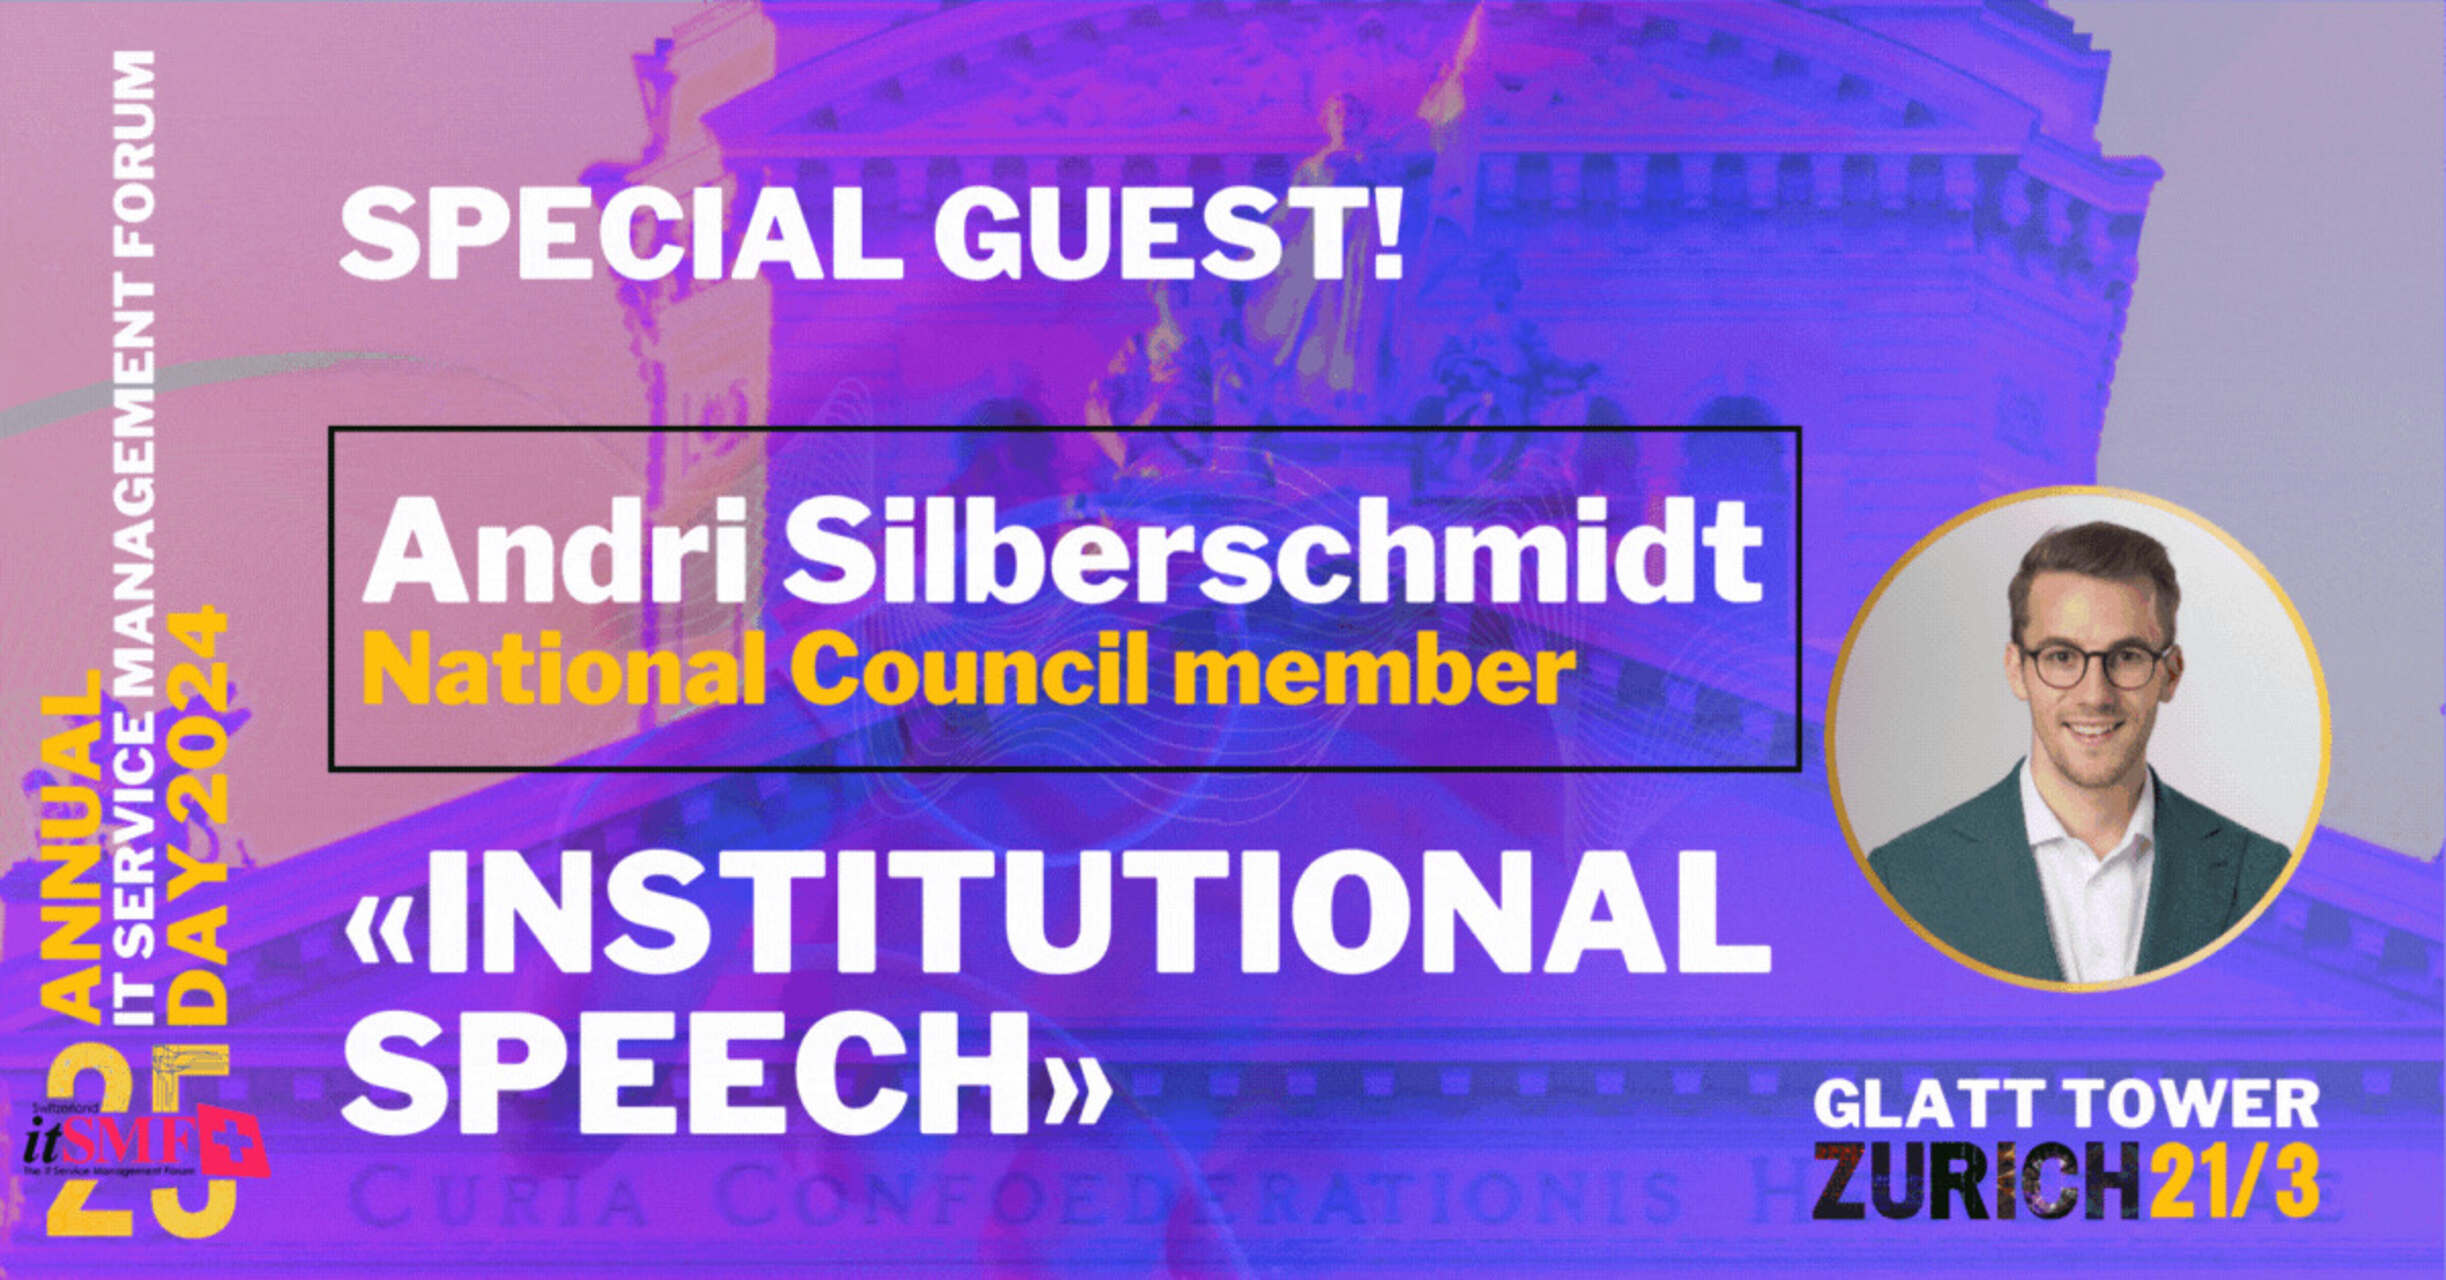 Upravljanje uslugama: Andri Silberschmidt, poduzetnik i član Švicarskog nacionalnog vijeća, održat će institucionalni govor na godišnjem događaju itSMF u Zurich-Wallisellenu 21. ožujka 2024.